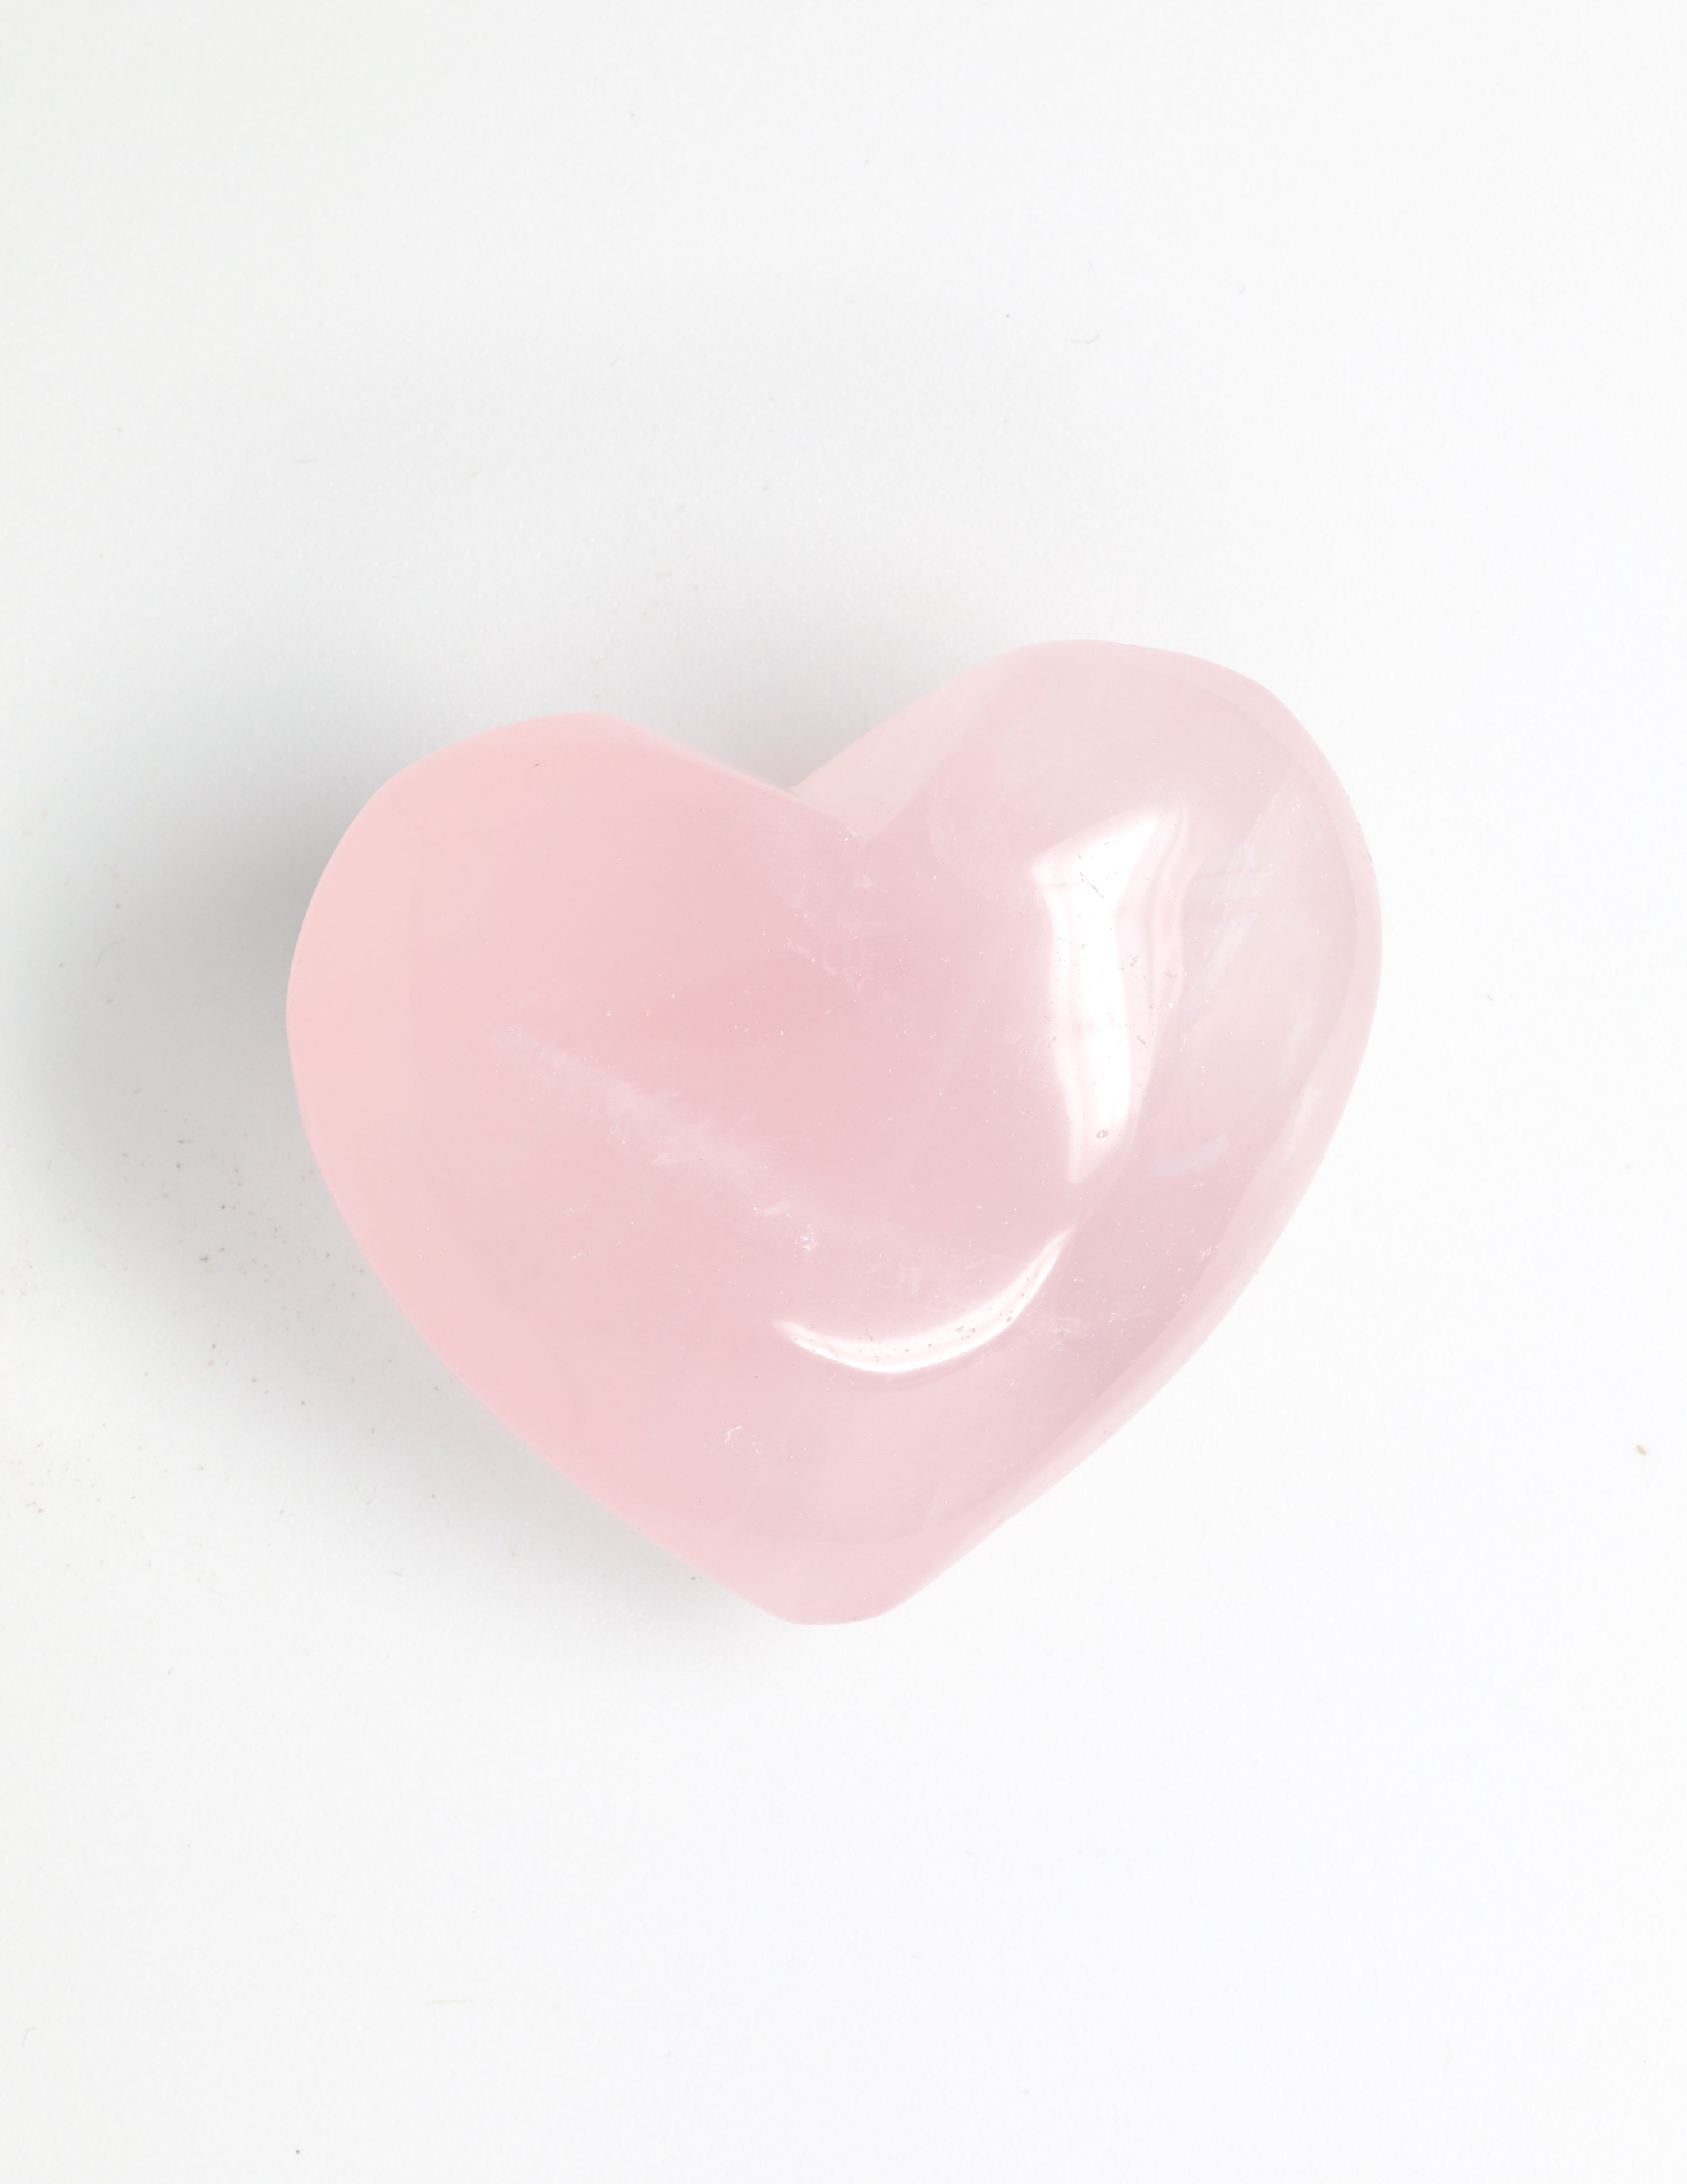 Rose Quartz Carved Heart Crystal